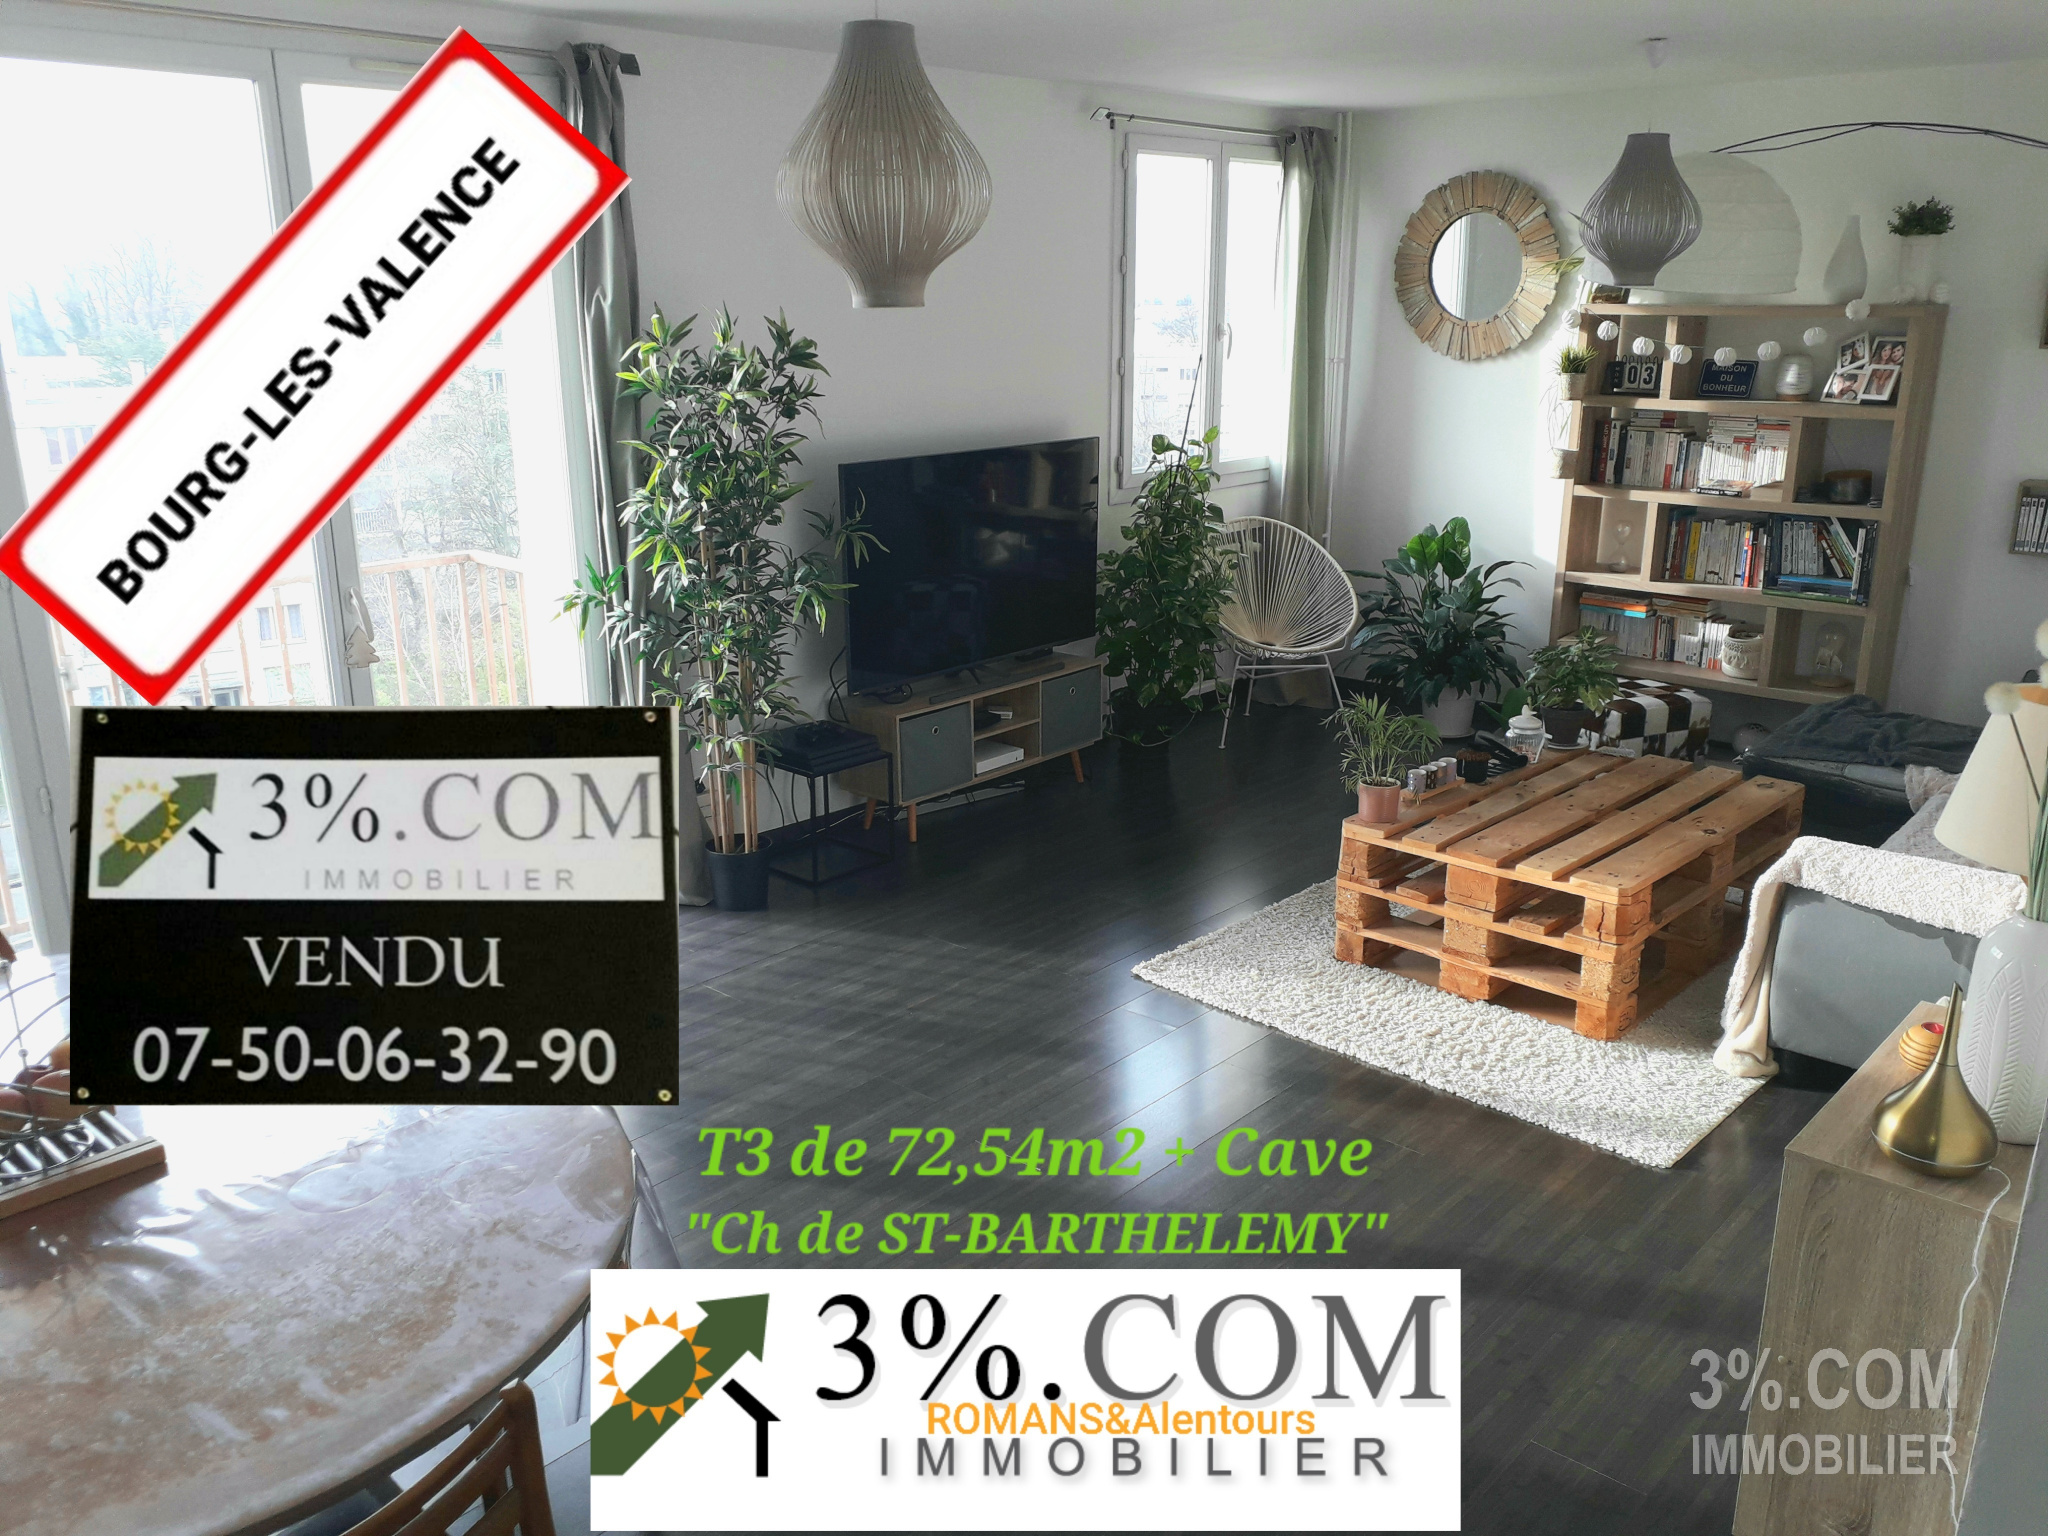 Vente Appartement 73m² 4 Pièces à Bourg-lès-Valence (26500) - 3%.Com